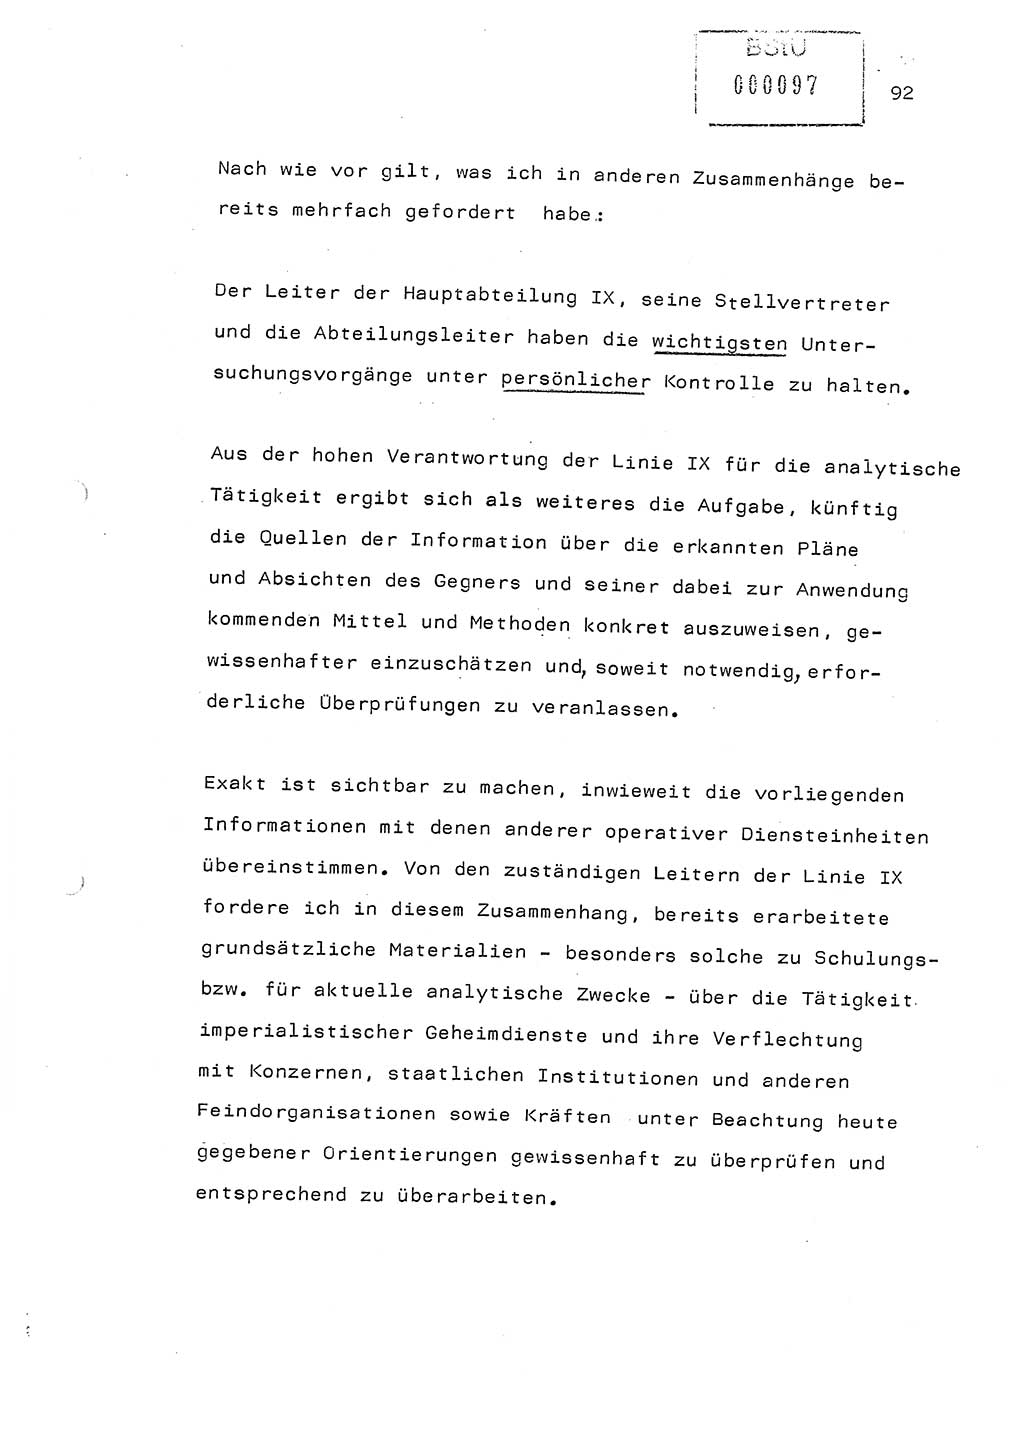 Referat (Generaloberst Erich Mielke) auf der Zentralen Dienstkonferenz am 24.5.1979 [Ministerium für Staatssicherheit (MfS), Deutsche Demokratische Republik (DDR), Der Minister], Berlin 1979, Seite 92 (Ref. DK DDR MfS Min. /79 1979, S. 92)